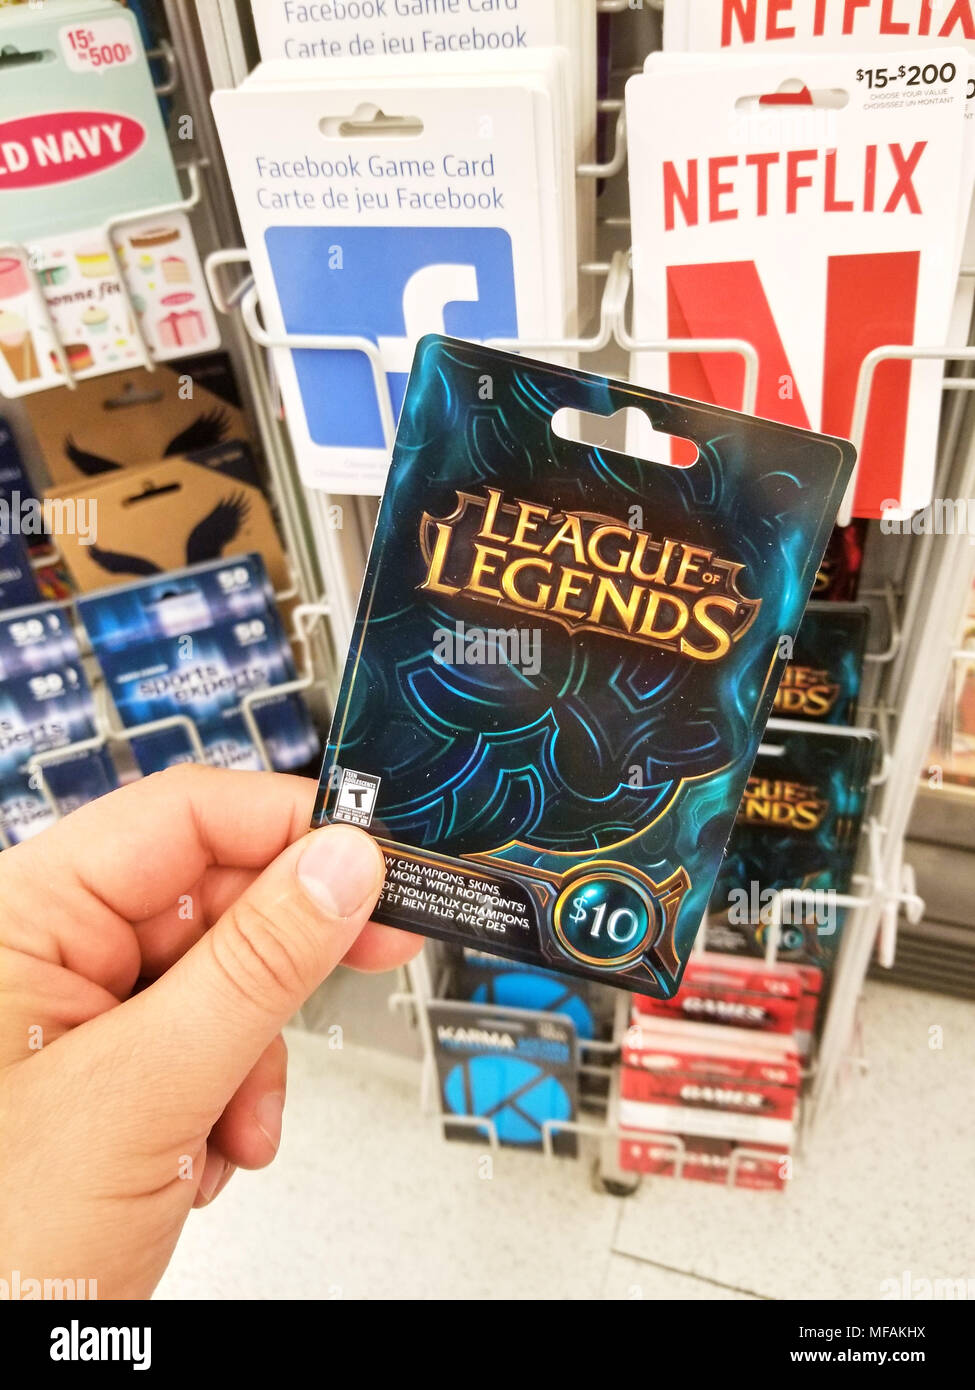 MONTREAL, KANADA - 31. MÄRZ 2018: eine Hand mit einem Liga der Legenden gift card. Liga der Legenden ist ein online Spiel, mischt sich der Geschwindigkeit Stockfoto